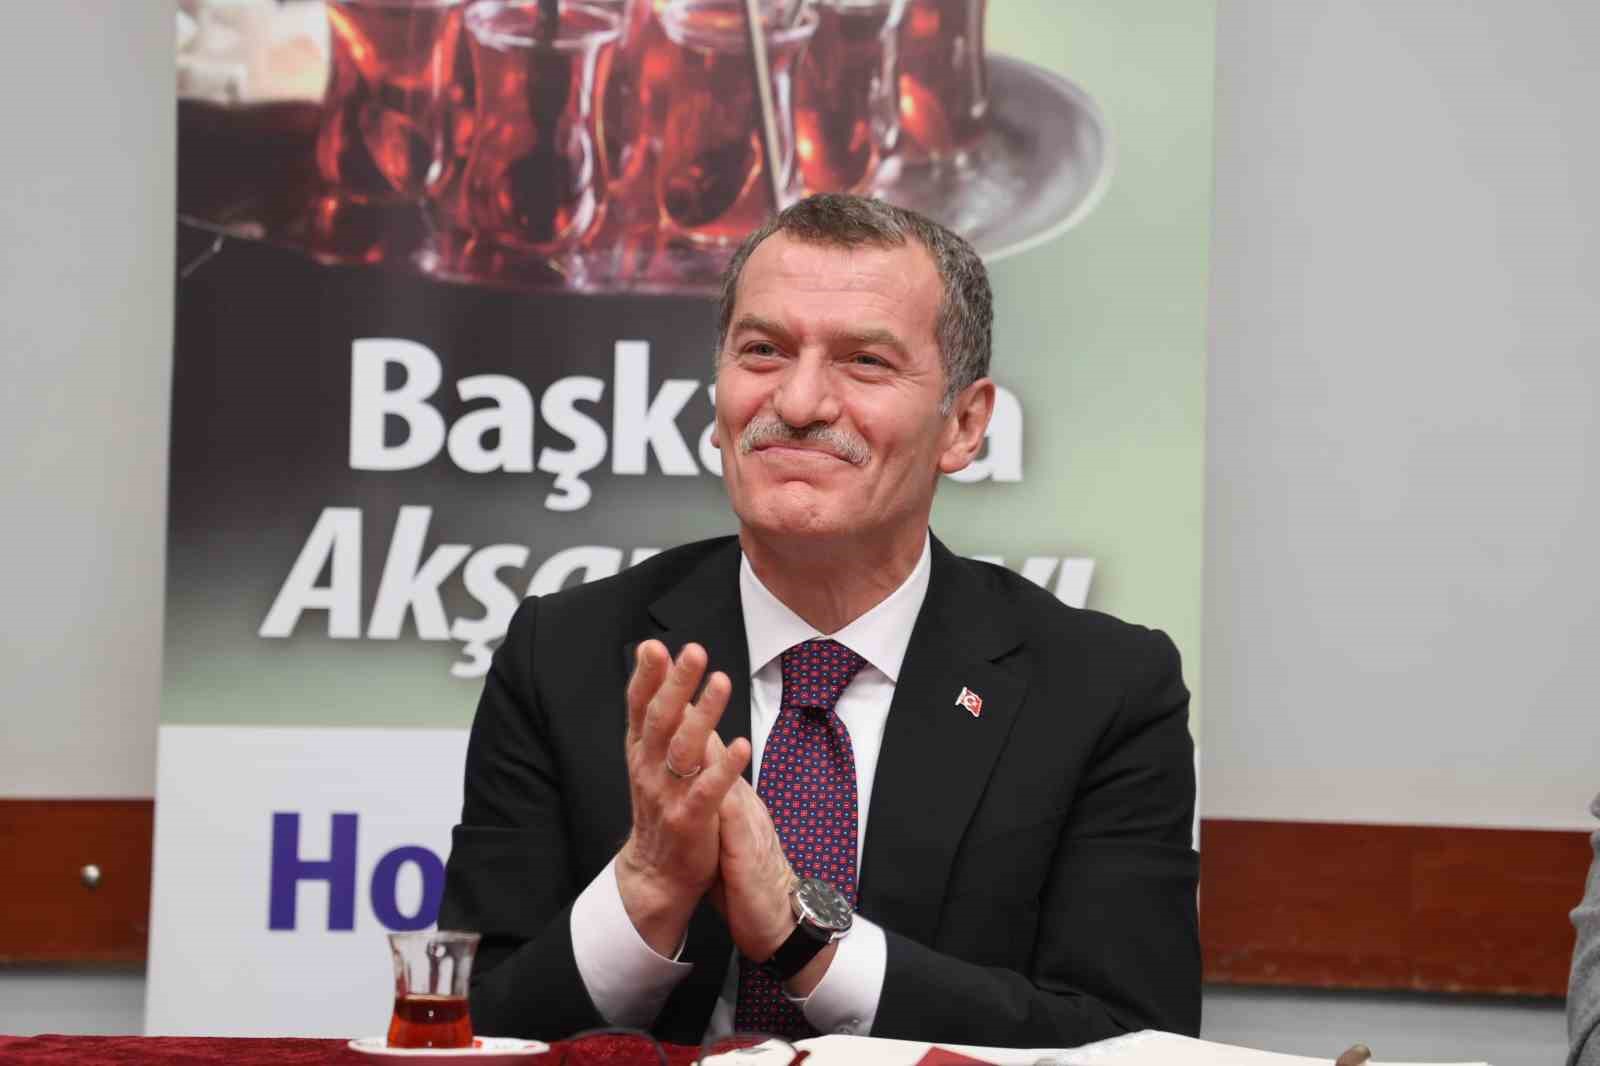 Başkan Arısoy: “İstanbul’un en temiz ilçesi olma hedefine emin adımlarla yürüyoruz”
